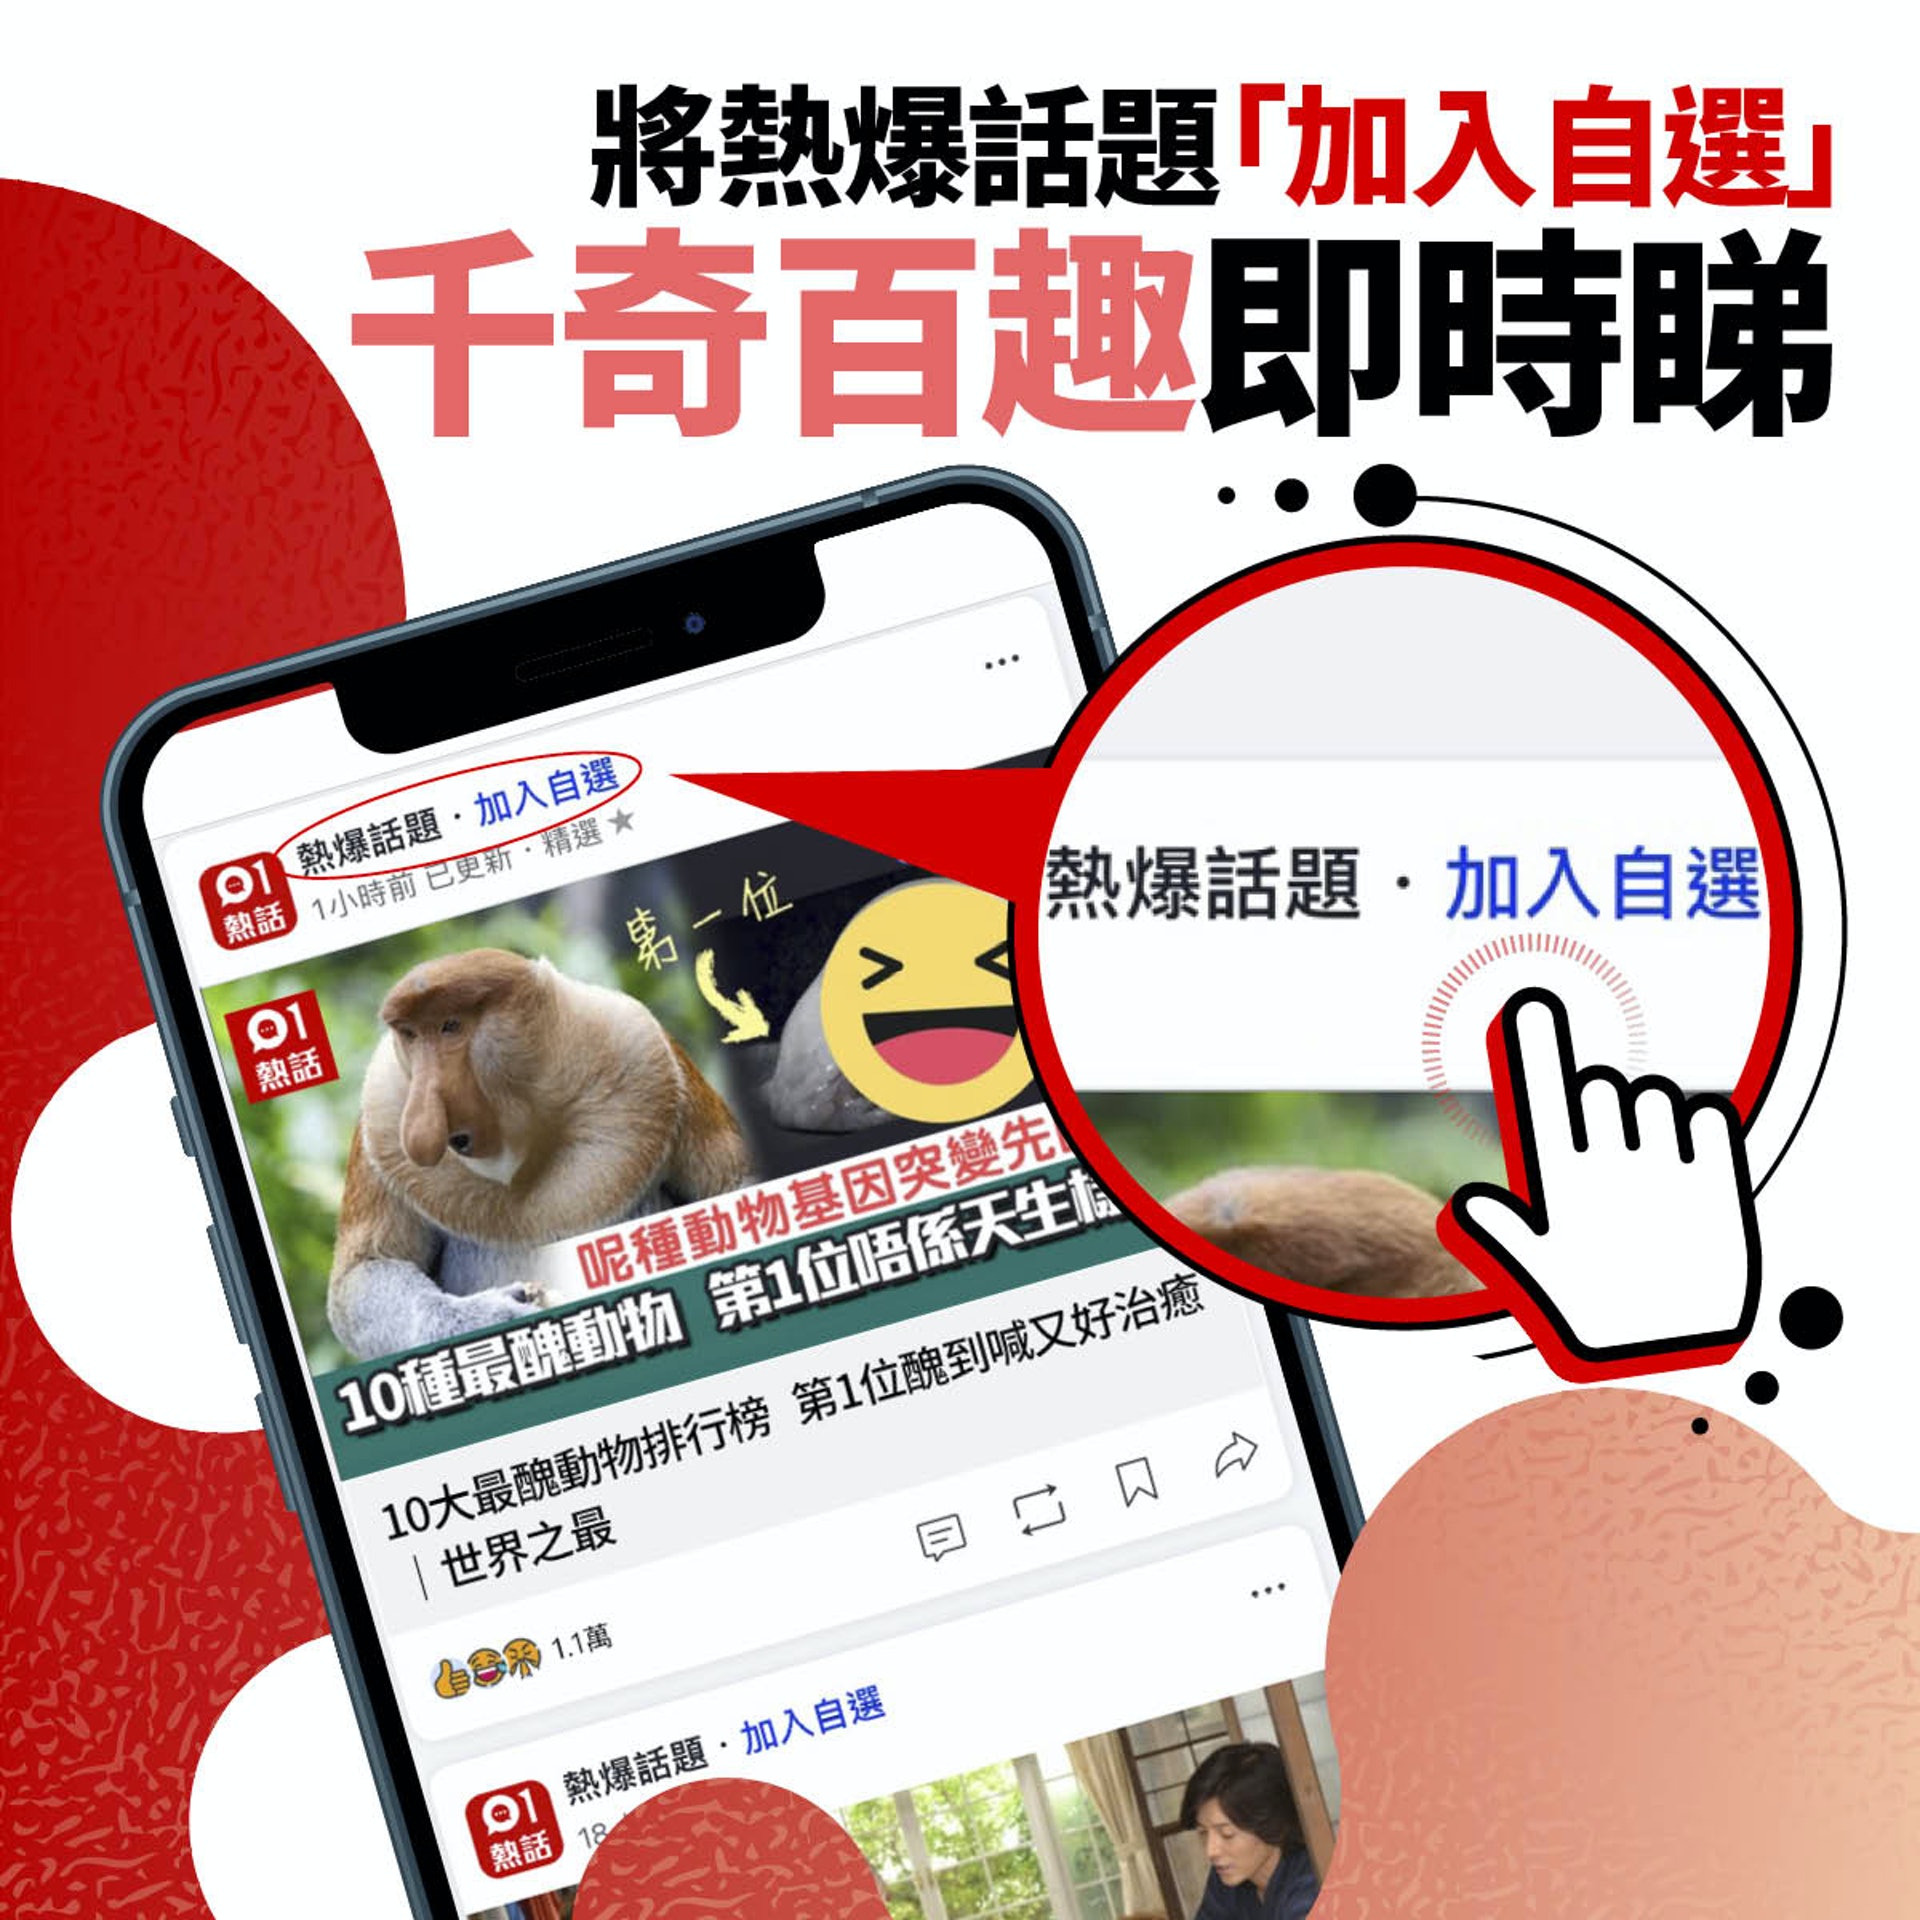 請在《香港01》手機App把「熱爆話題」加入自選，緊貼全球各地最hit話題！（01製圖）